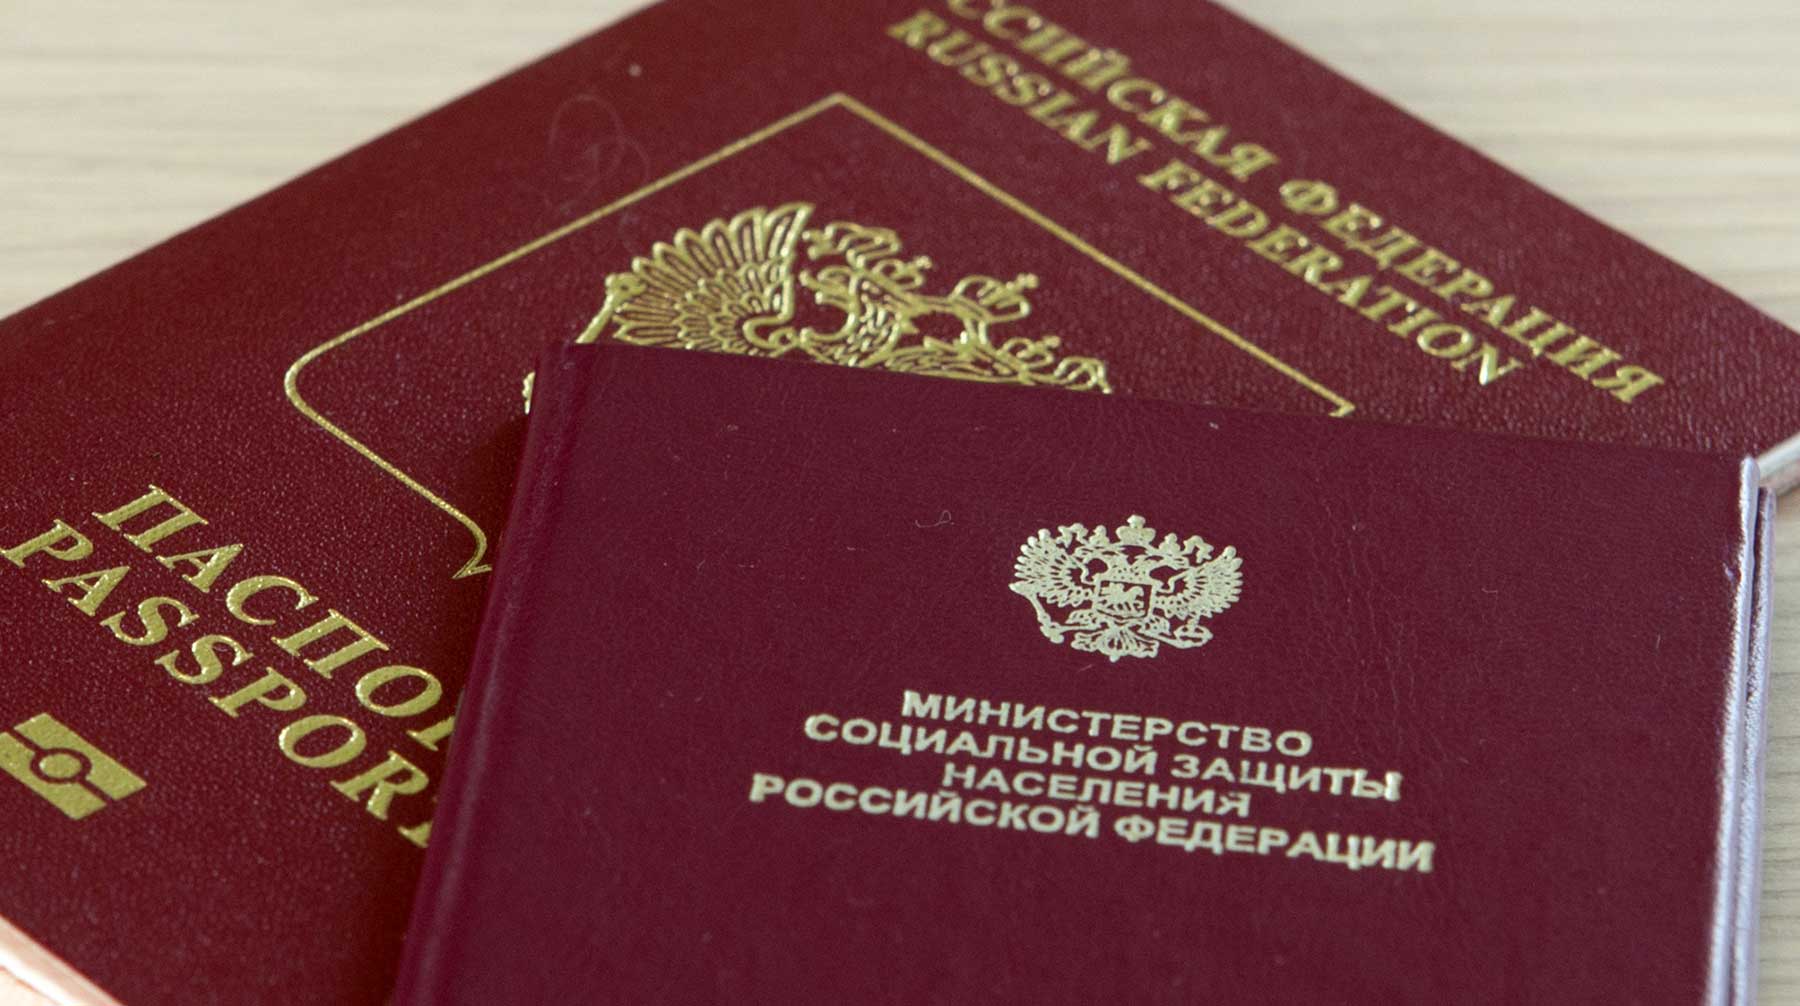 Президент России также подписал закон об уточнении порядка начисления социальных выплат семьям Фото: © GLOBAL LOOK press / Nikolay Gyngazov